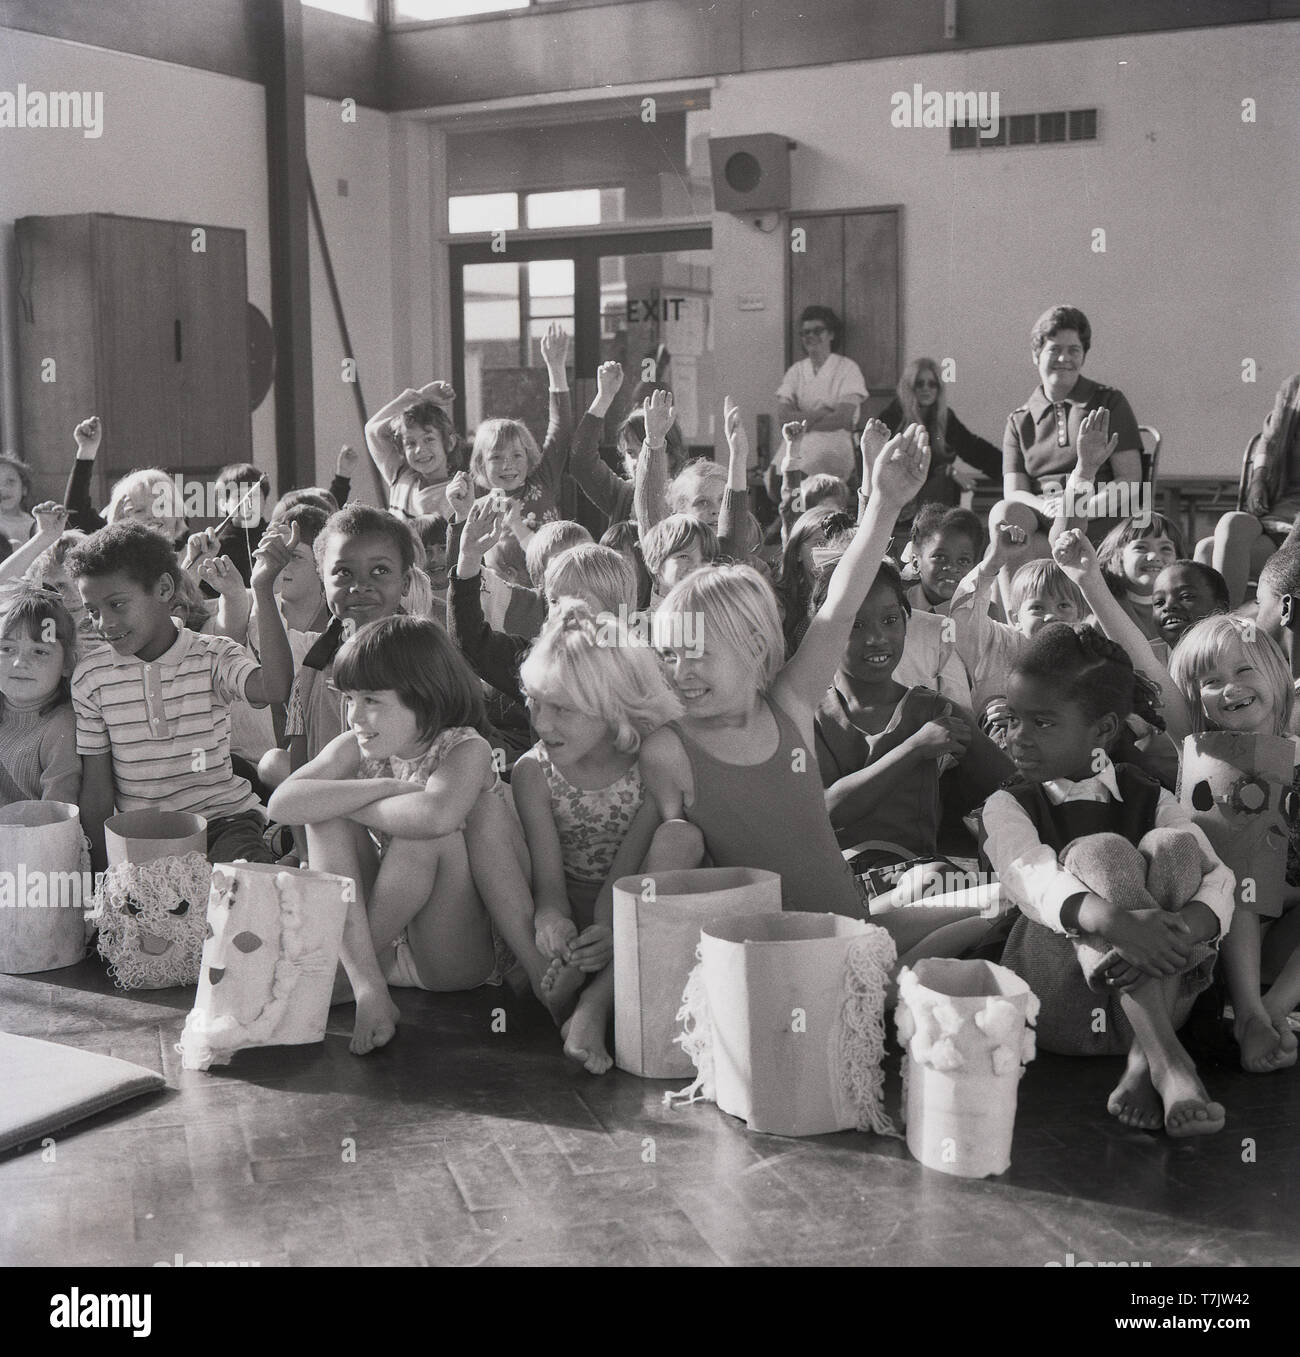 Années 1960, historiques, excité les jeunes enfants de l'école dans la salle d'école leur main pour poser une question, England, UK. Banque D'Images